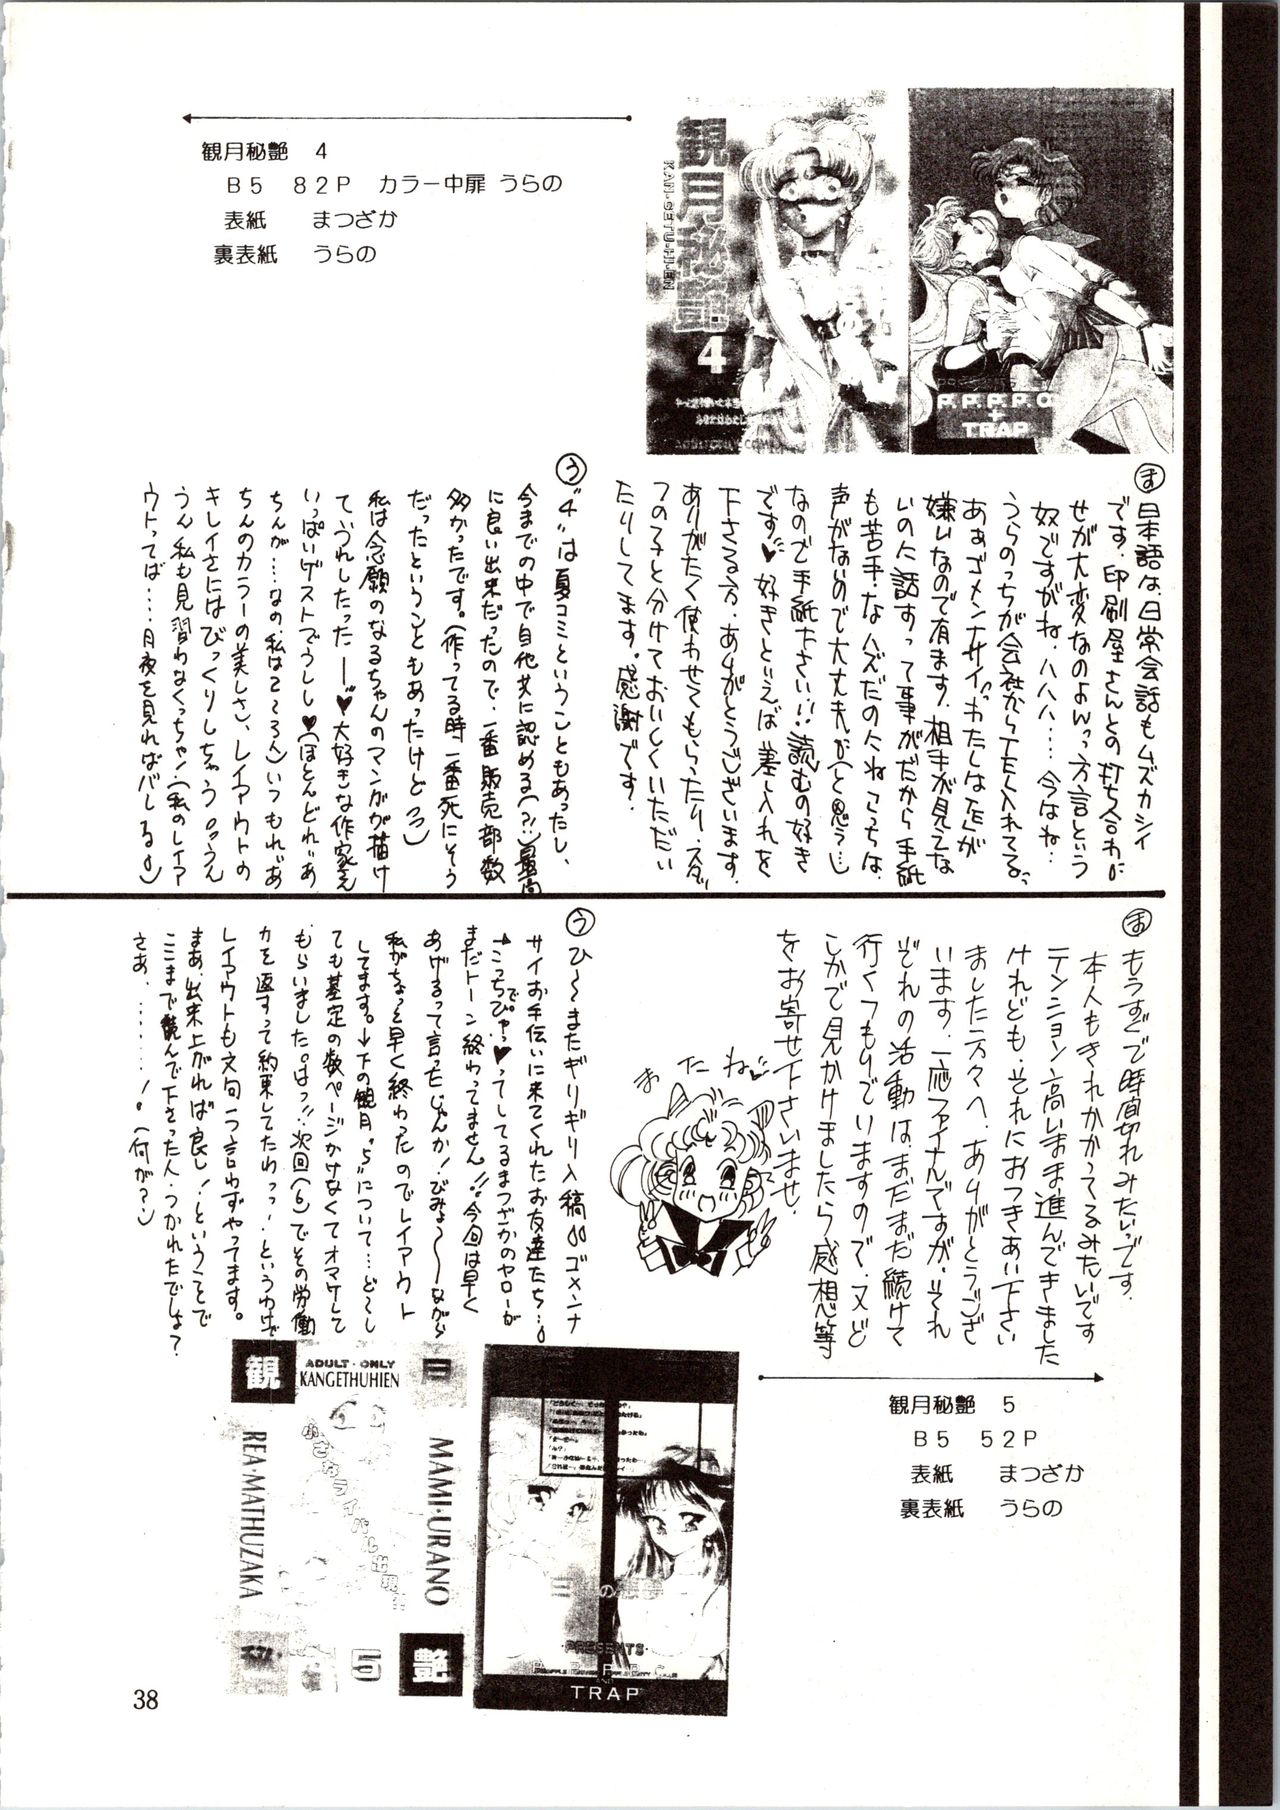 [P.P.P.P.C, TRAP (Matsuzaka Reia, Urano Mami)] Kangethu Hien Vol. 6 (Bishoujo Senshi Sailor Moon) page 38 full